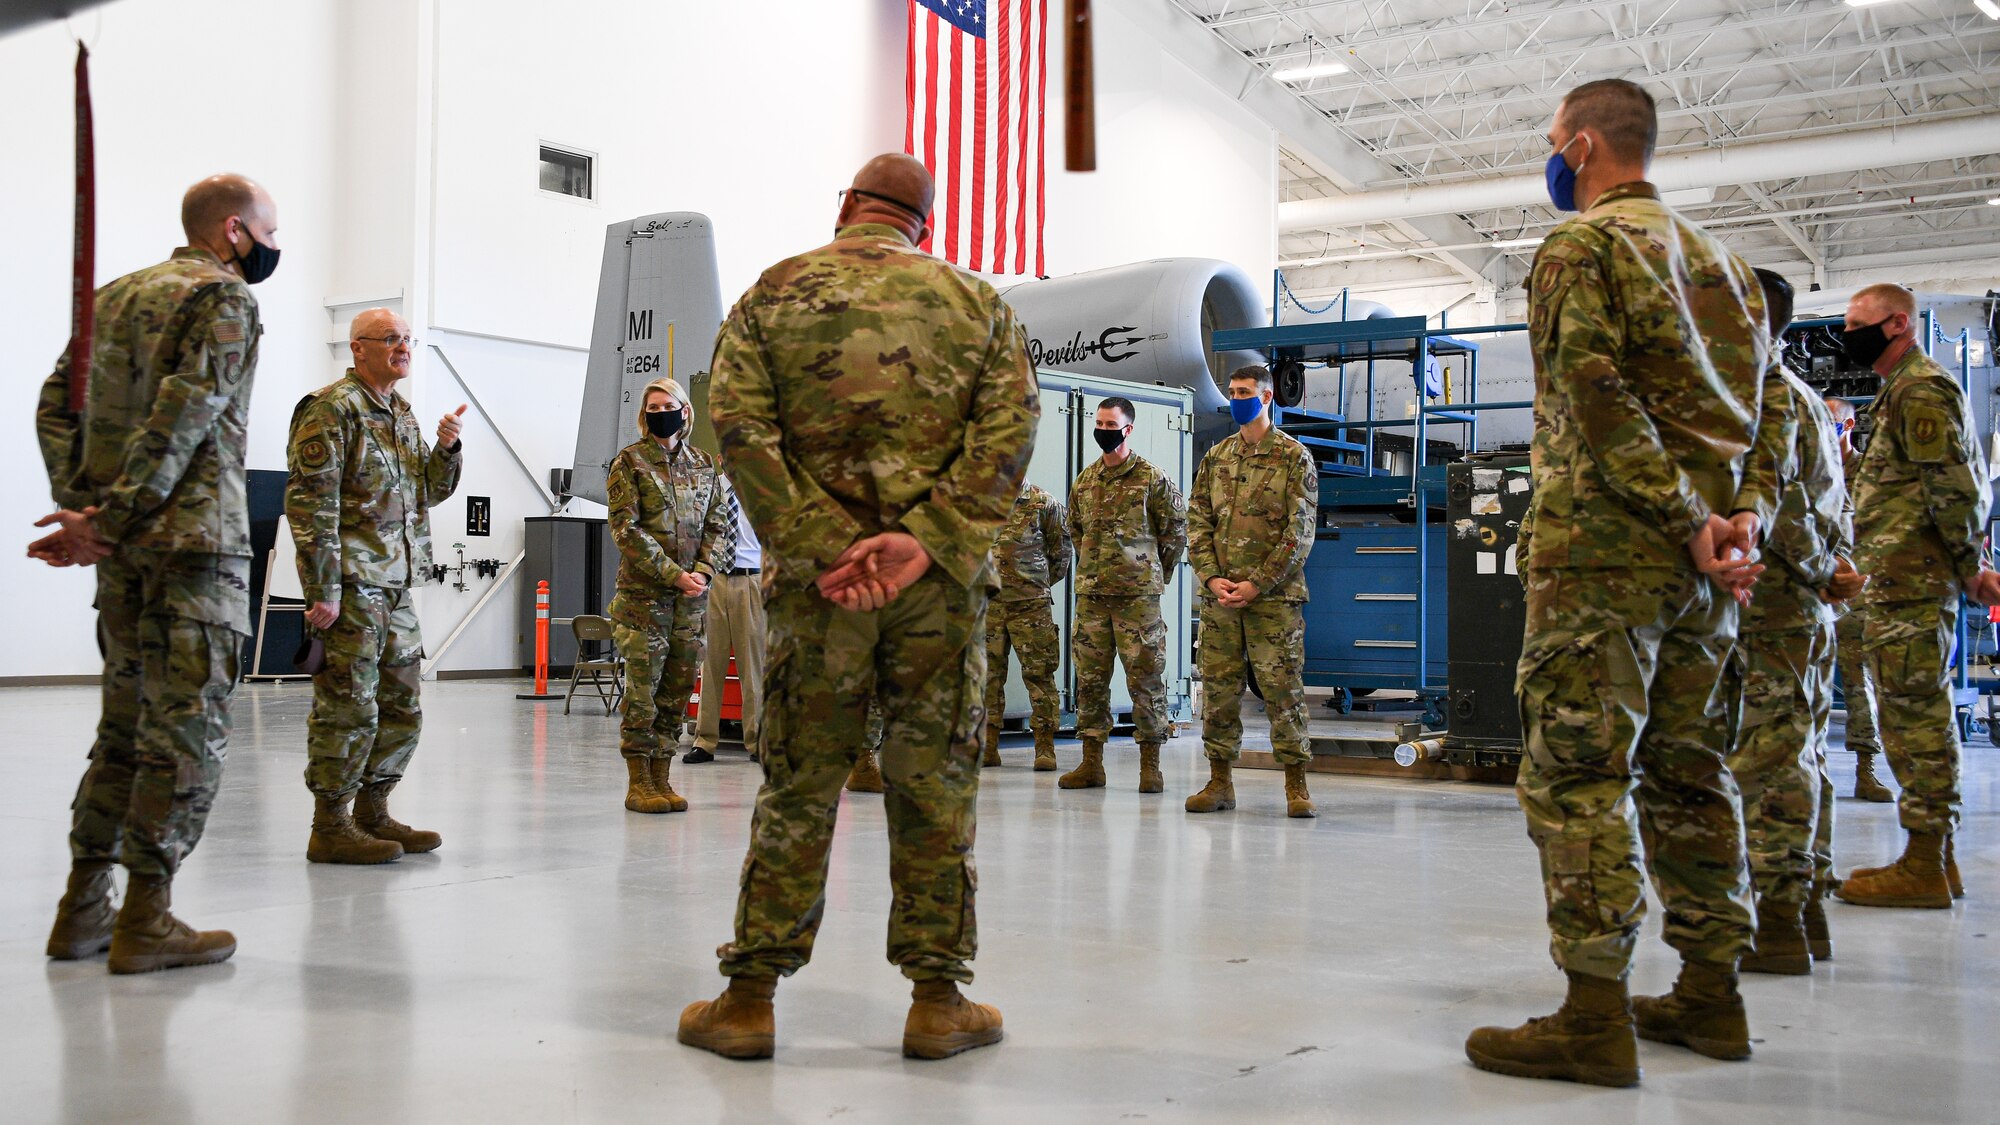 Gen. Bunch is addressing Airmen standing in an aircraft maintenance hangar from the 309th Expeditionary Depot Maintenance Flight.